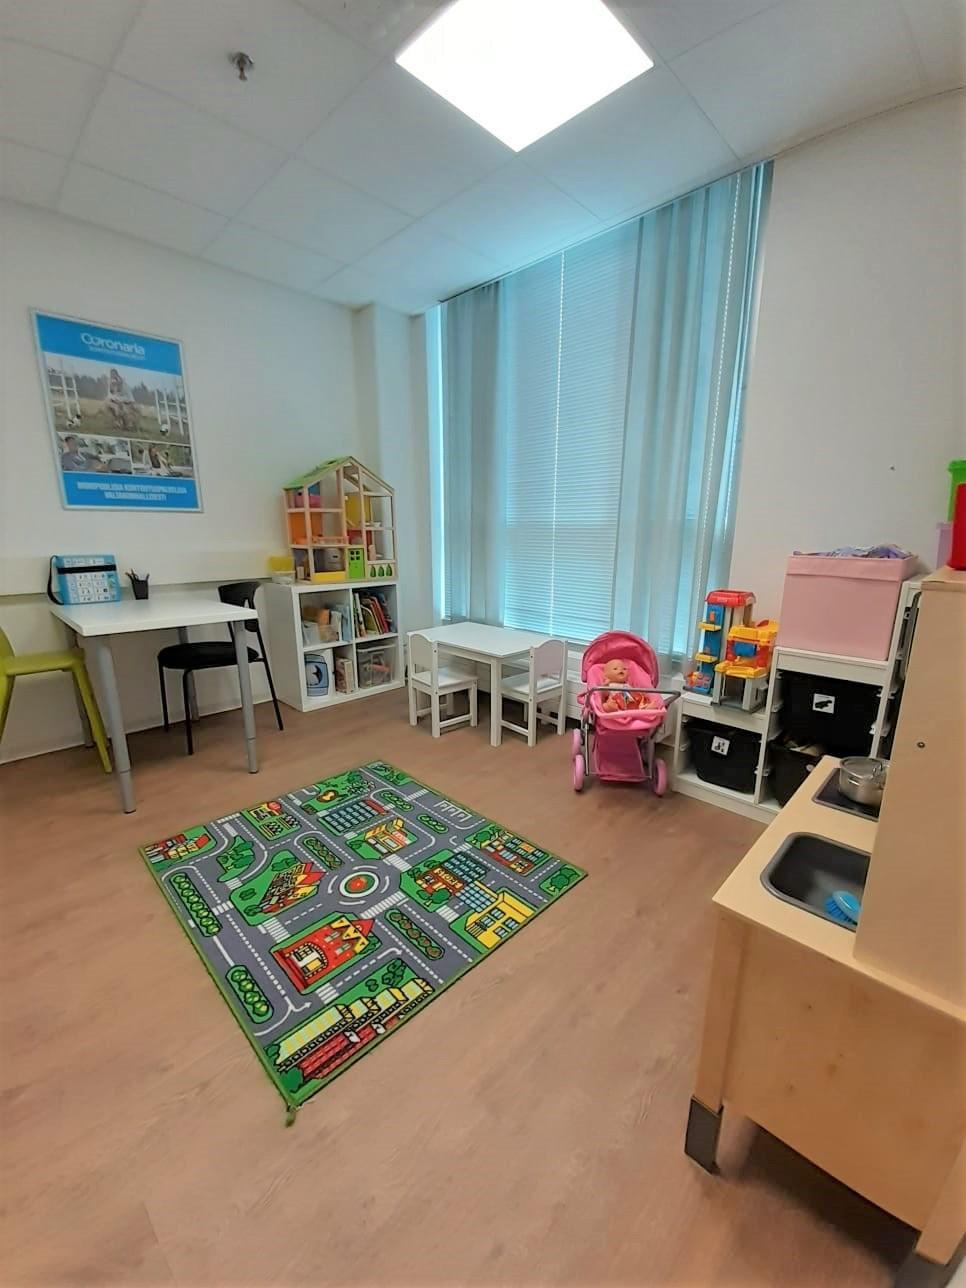 Coronaria kuntoutus- ja terapiapalveluiden Lahden toimipisteen leikkipaikka, jossa on paljon tila ja leluja lapsille.